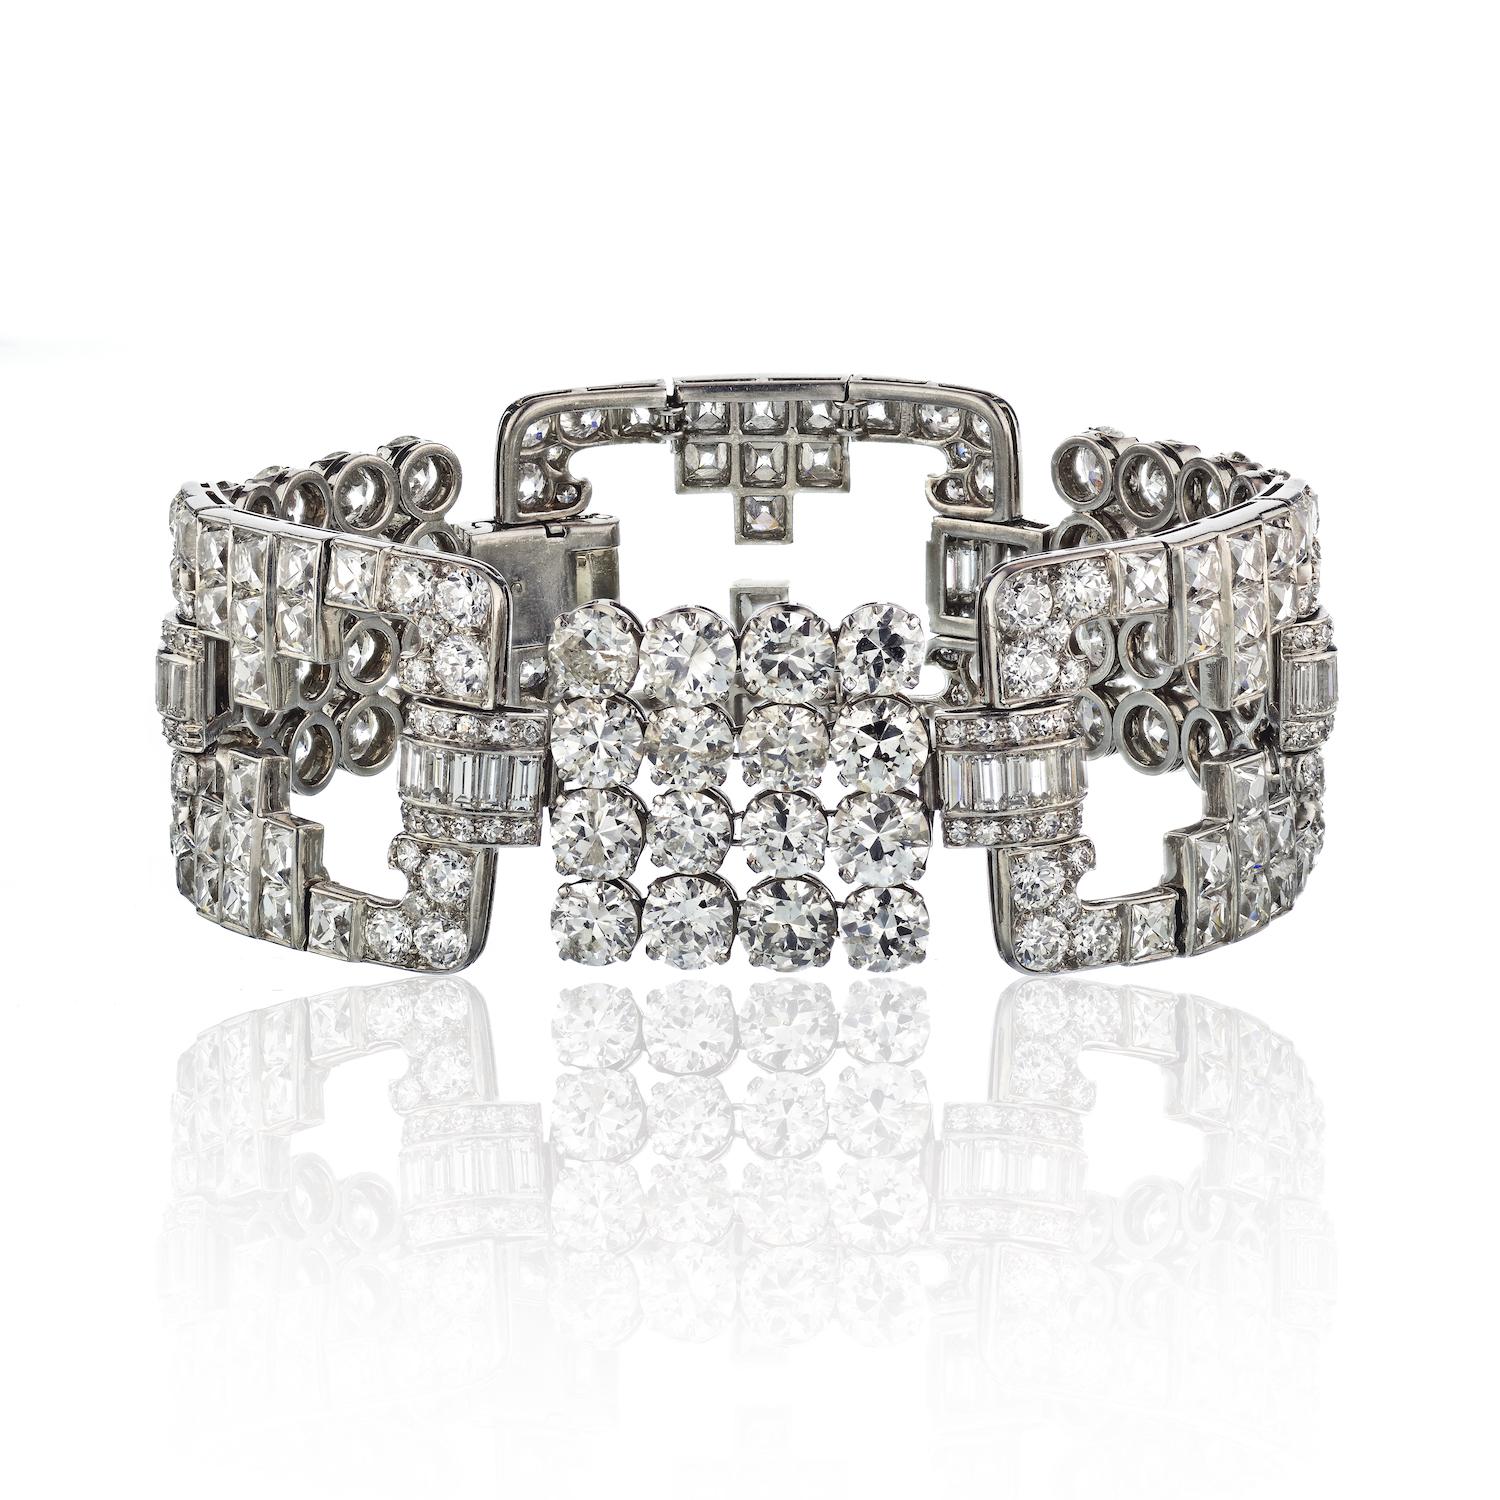 Dieses beeindruckende Diamant-Gliederarmband ist mit luxuriösen Diamanten im französischen Schliff, Vintage-Diamanten im Rundschliff und im Baguetteschliff besetzt.
Dieses unglaubliche Vintage-Diamantarmband mit einem Gesamtgewicht von 45 Karat ist